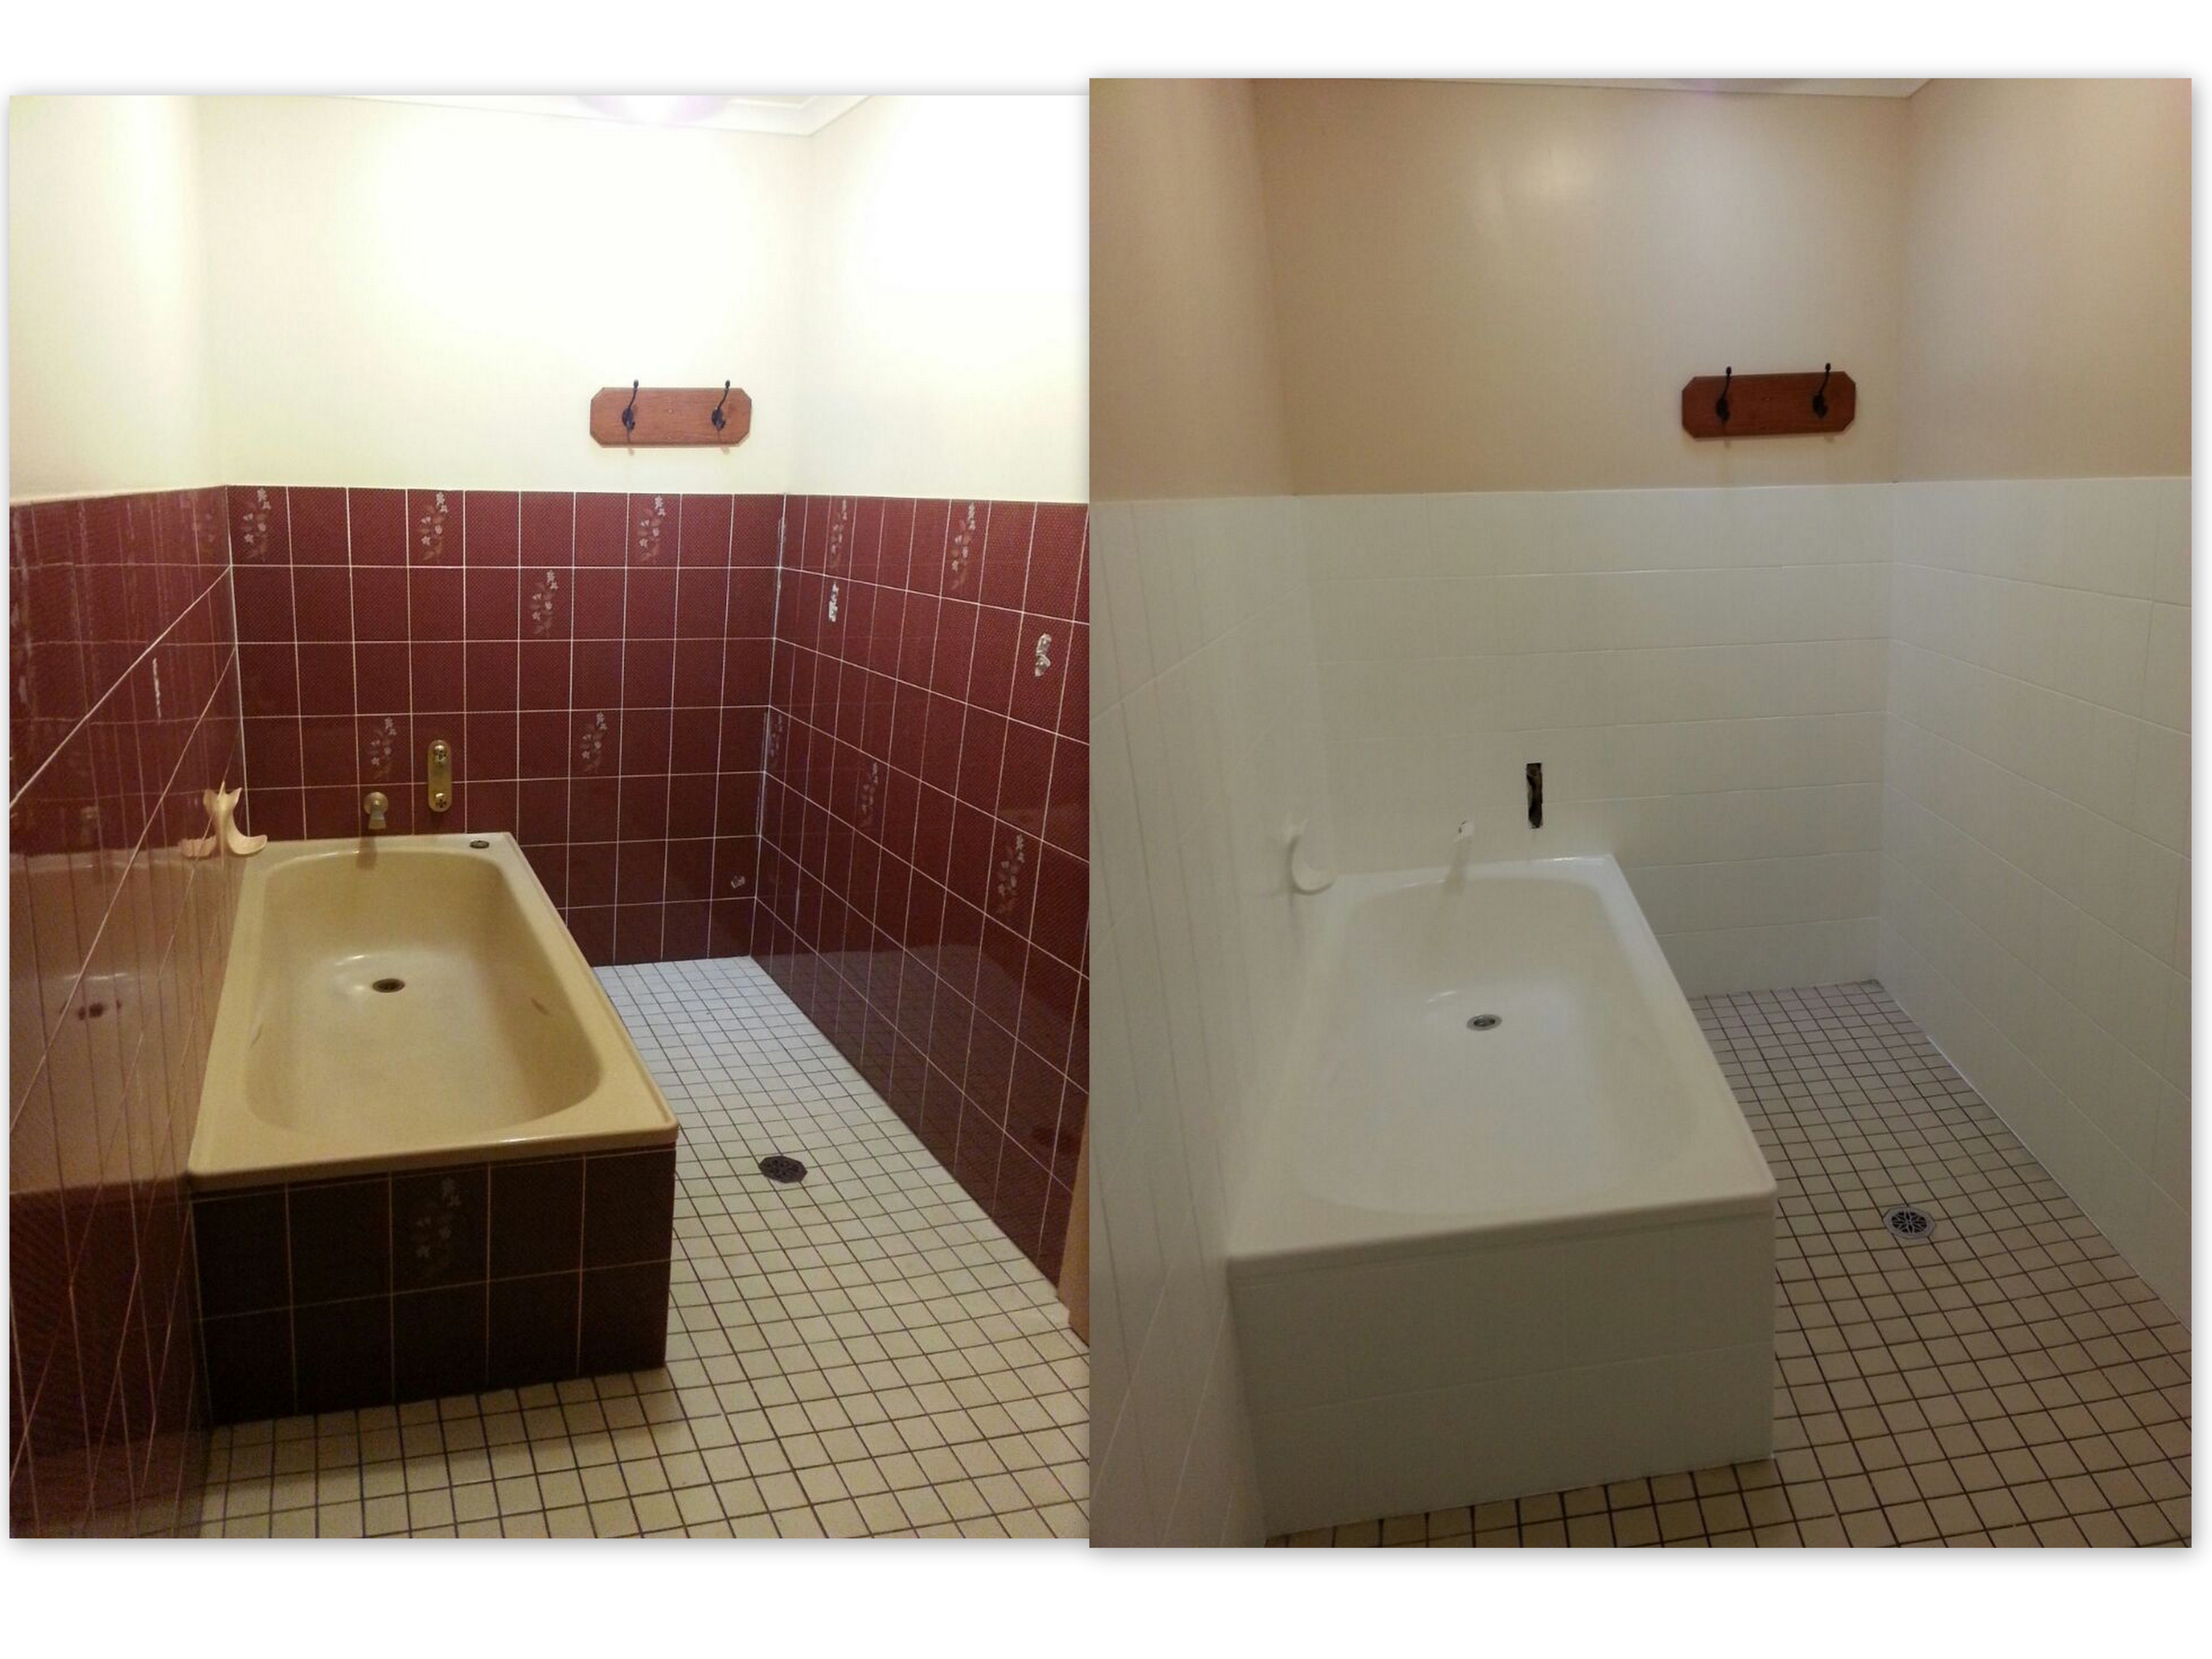 Bathroom Resurfacing Bath Tub Resurfacing Sydney All Class